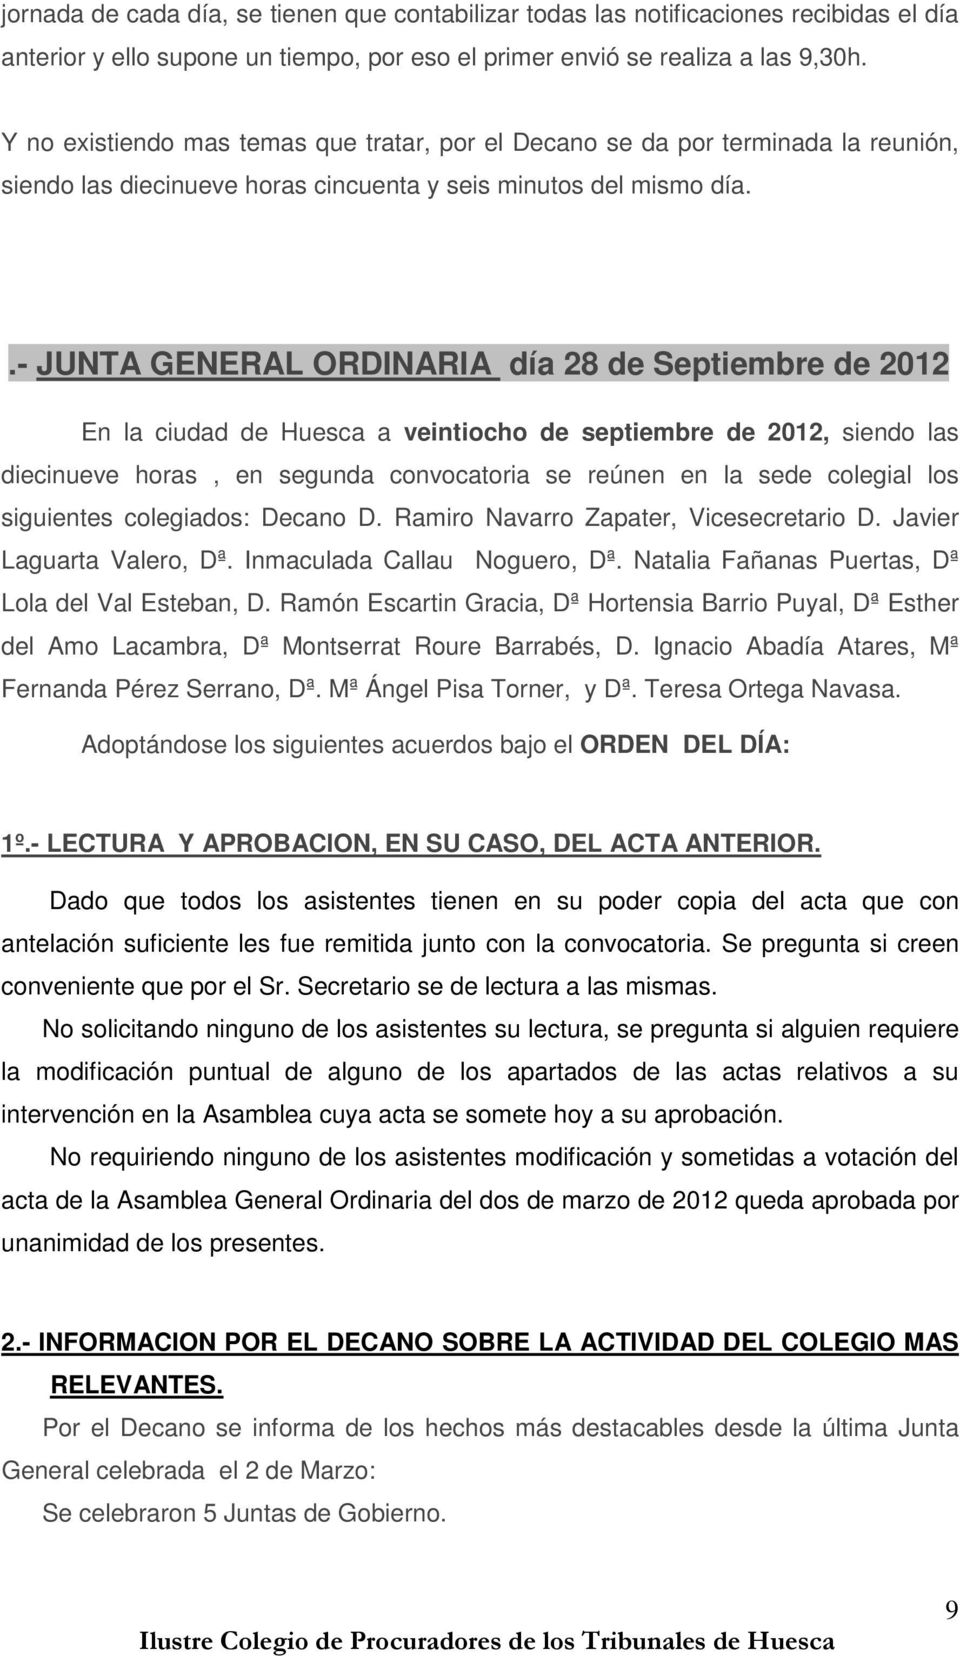 .- JUNTA GENERAL ORDINARIA día 28 de Septiembre de 2012 En la ciudad de Huesca a veintiocho de septiembre de 2012, siendo las diecinueve horas, en segunda convocatoria se reúnen en la sede colegial